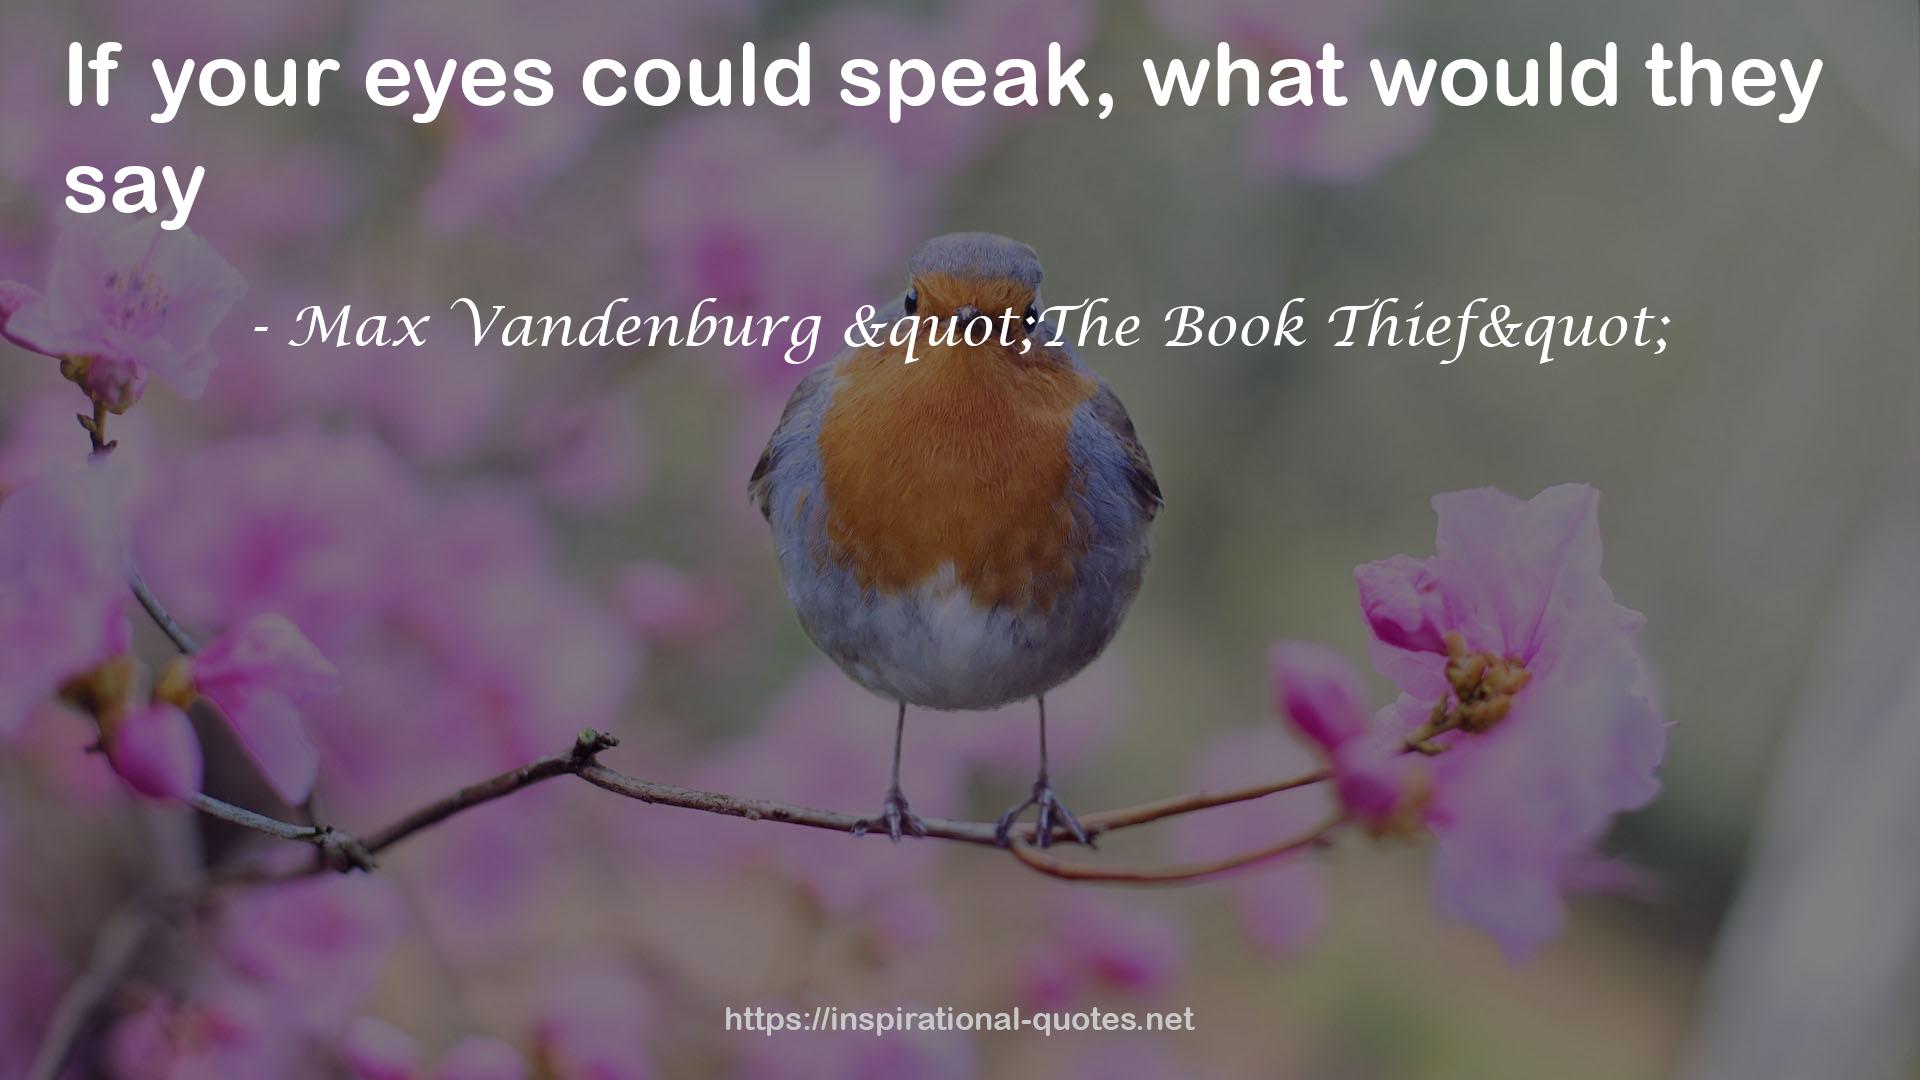 Max Vandenburg "The Book Thief" QUOTES